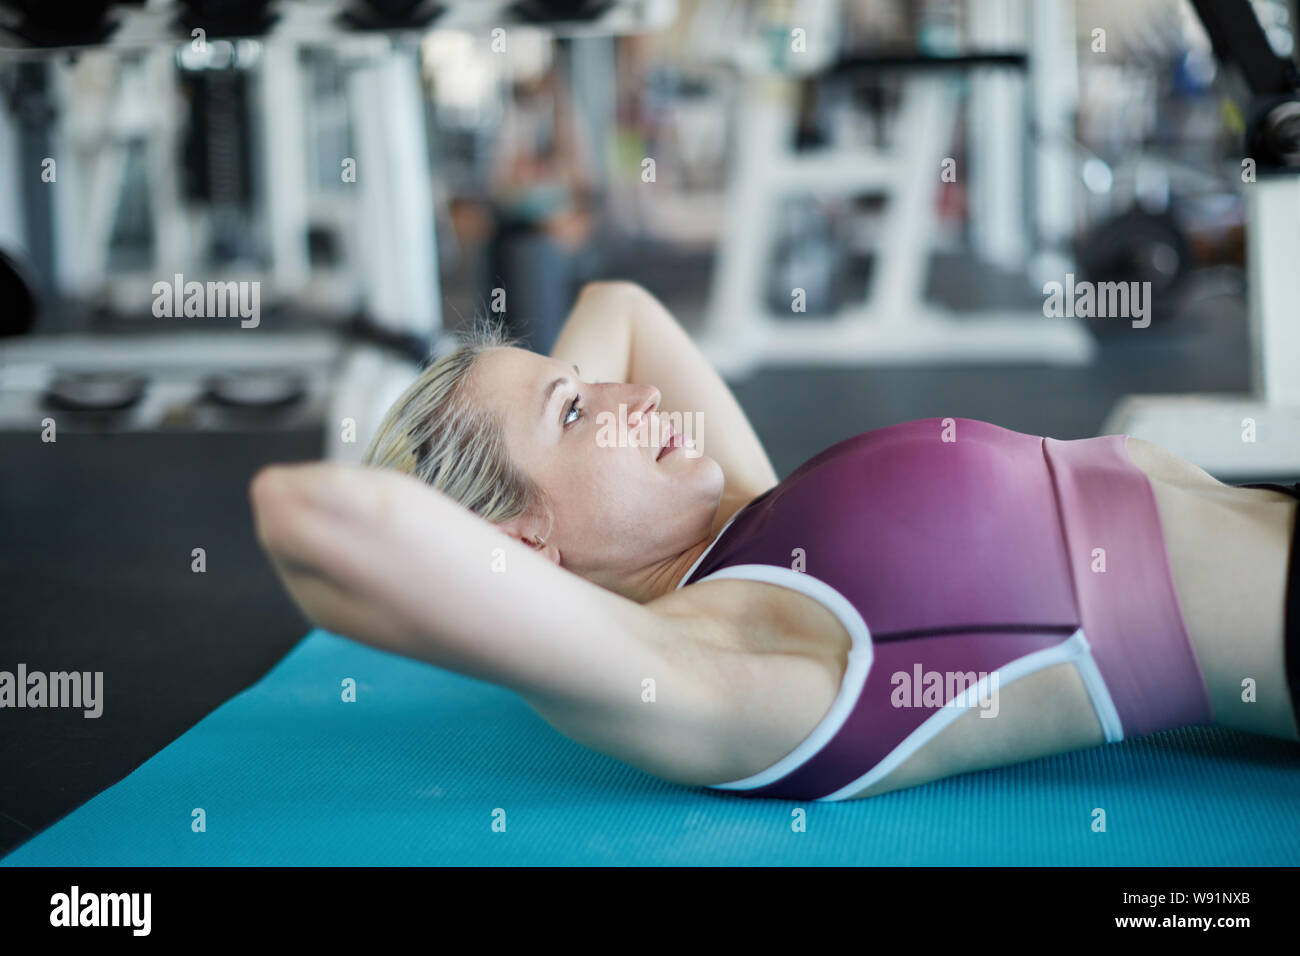 Junge Frau in Fitnesscenter Yoga Matte crunches machen wie Bauchmuskeltraining Stockfoto